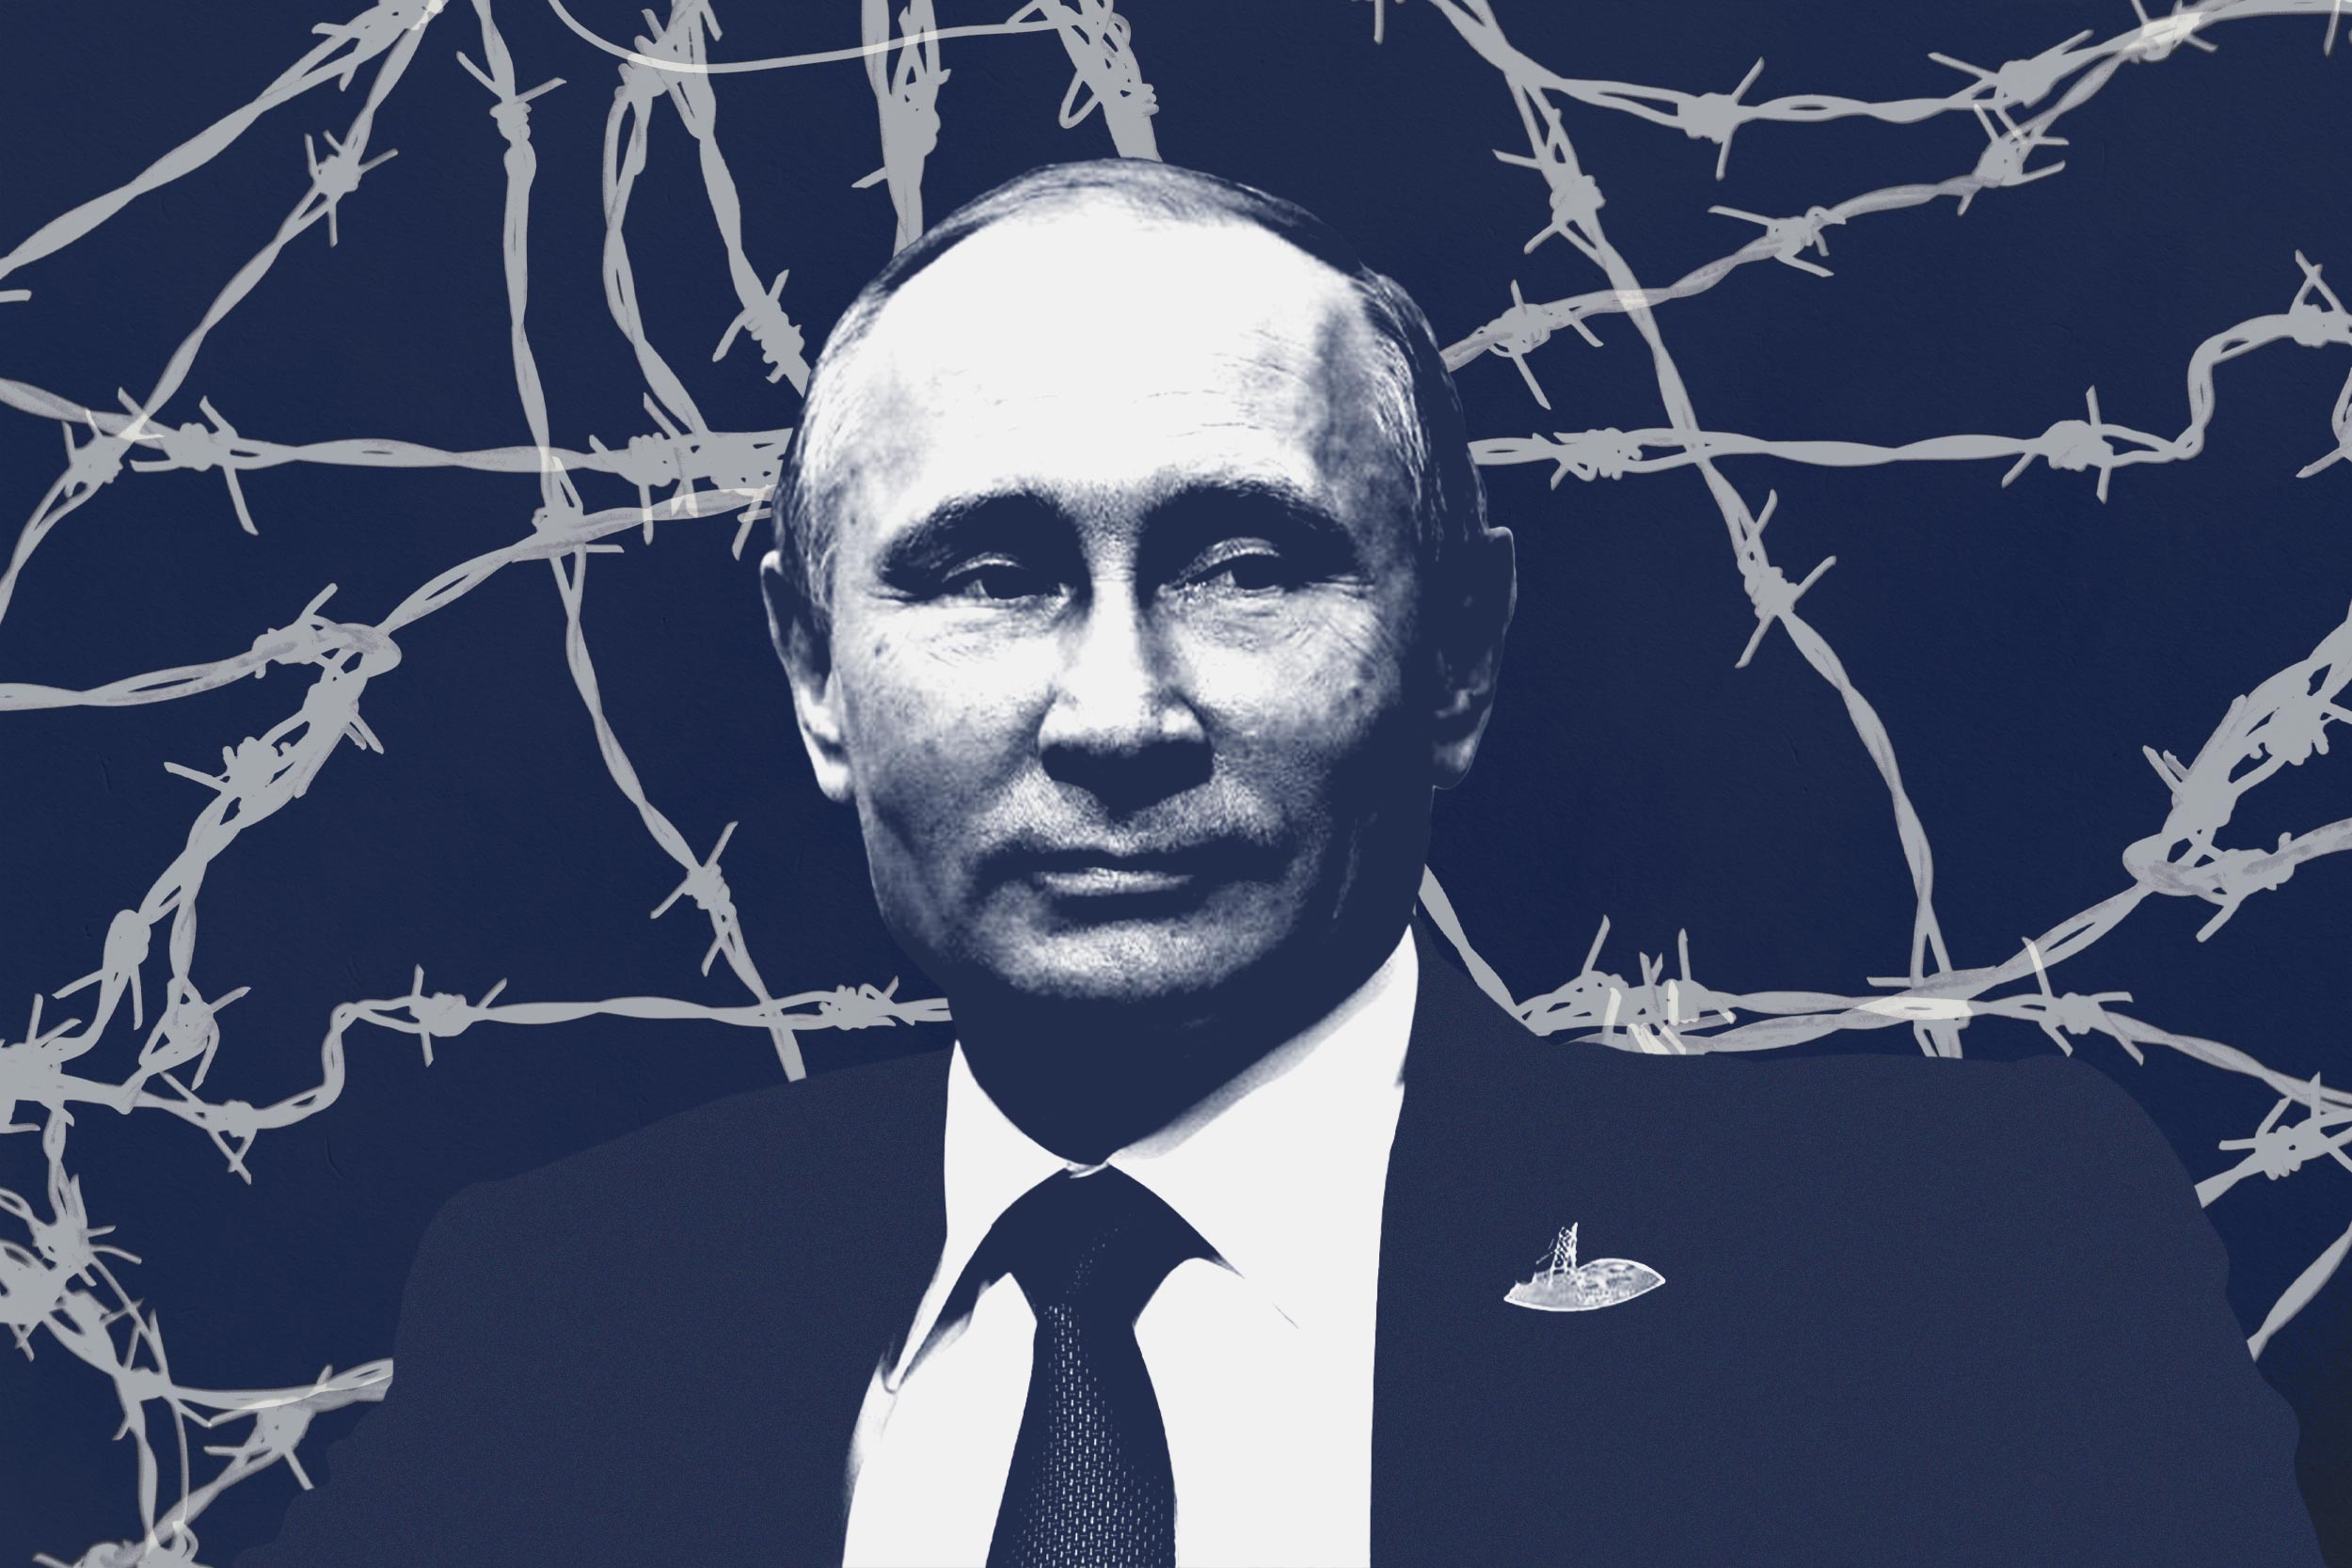 Illustration of Vladimir Putin